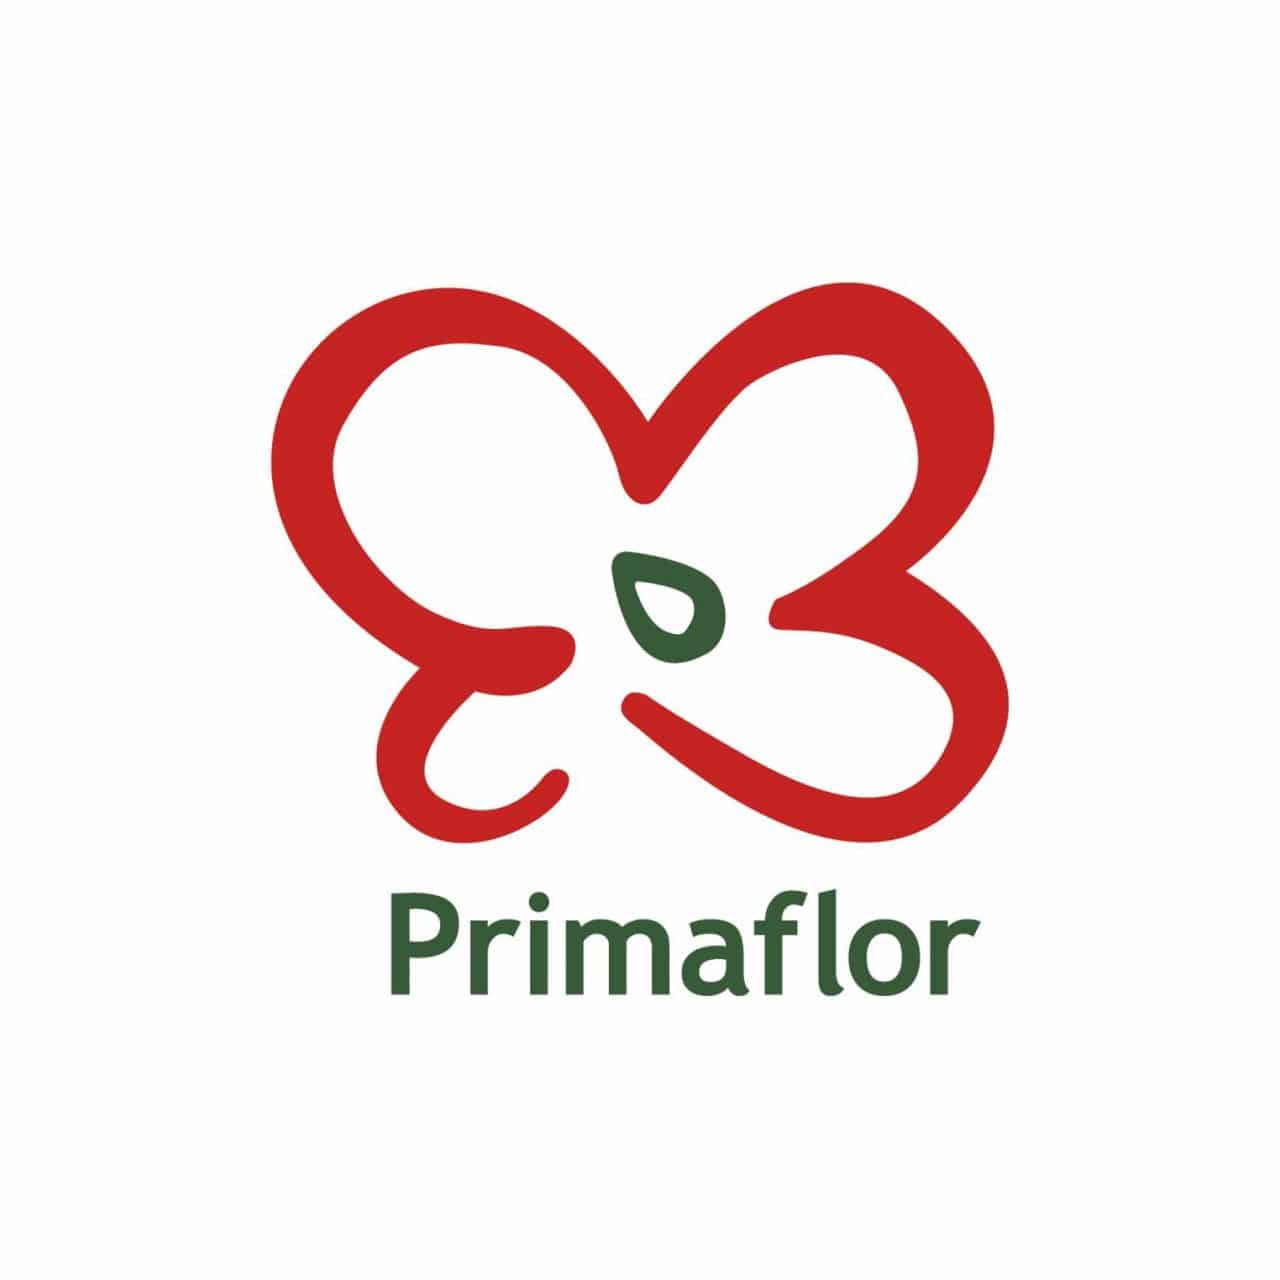   Primaflor recuerda los beneficios de una alimentación basada en verduras y hortalizas, así como el bienestar psicológico